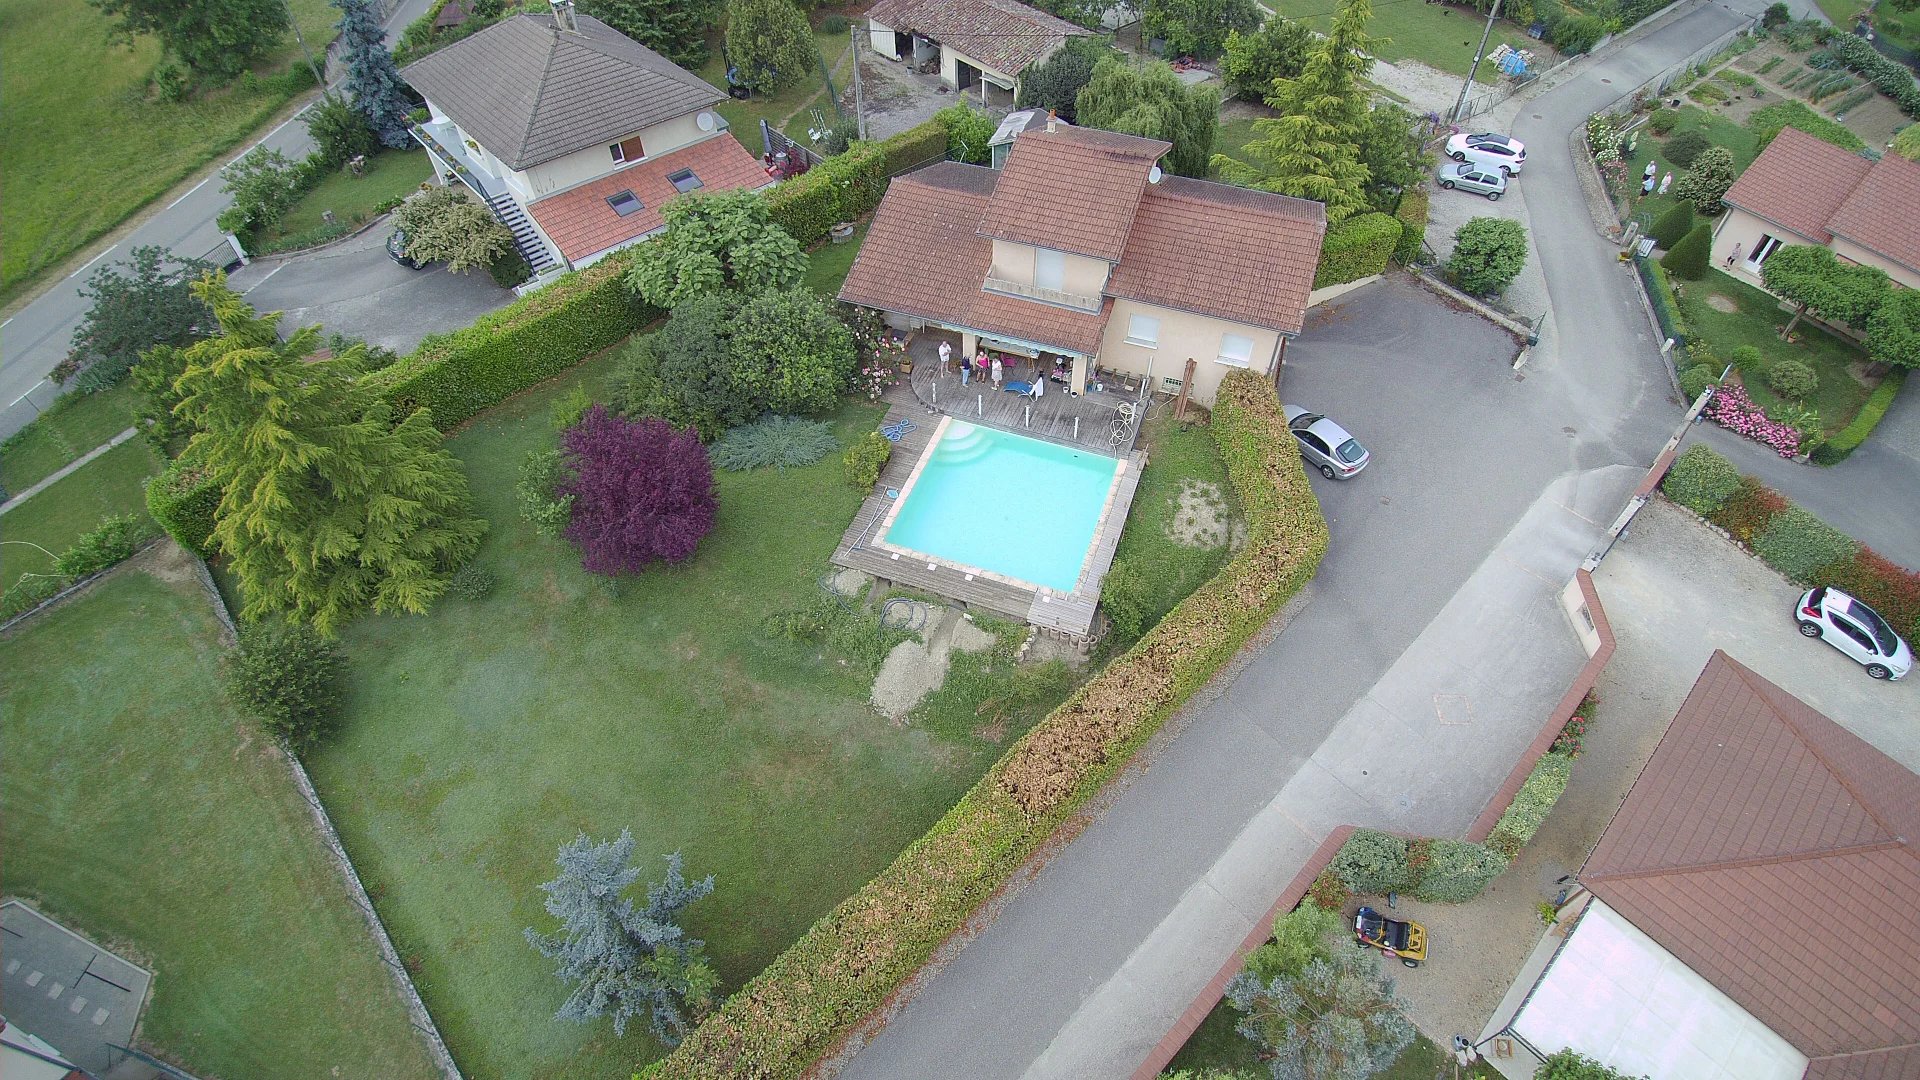 Maison T6 avec piscine sur terrain 1500 m²